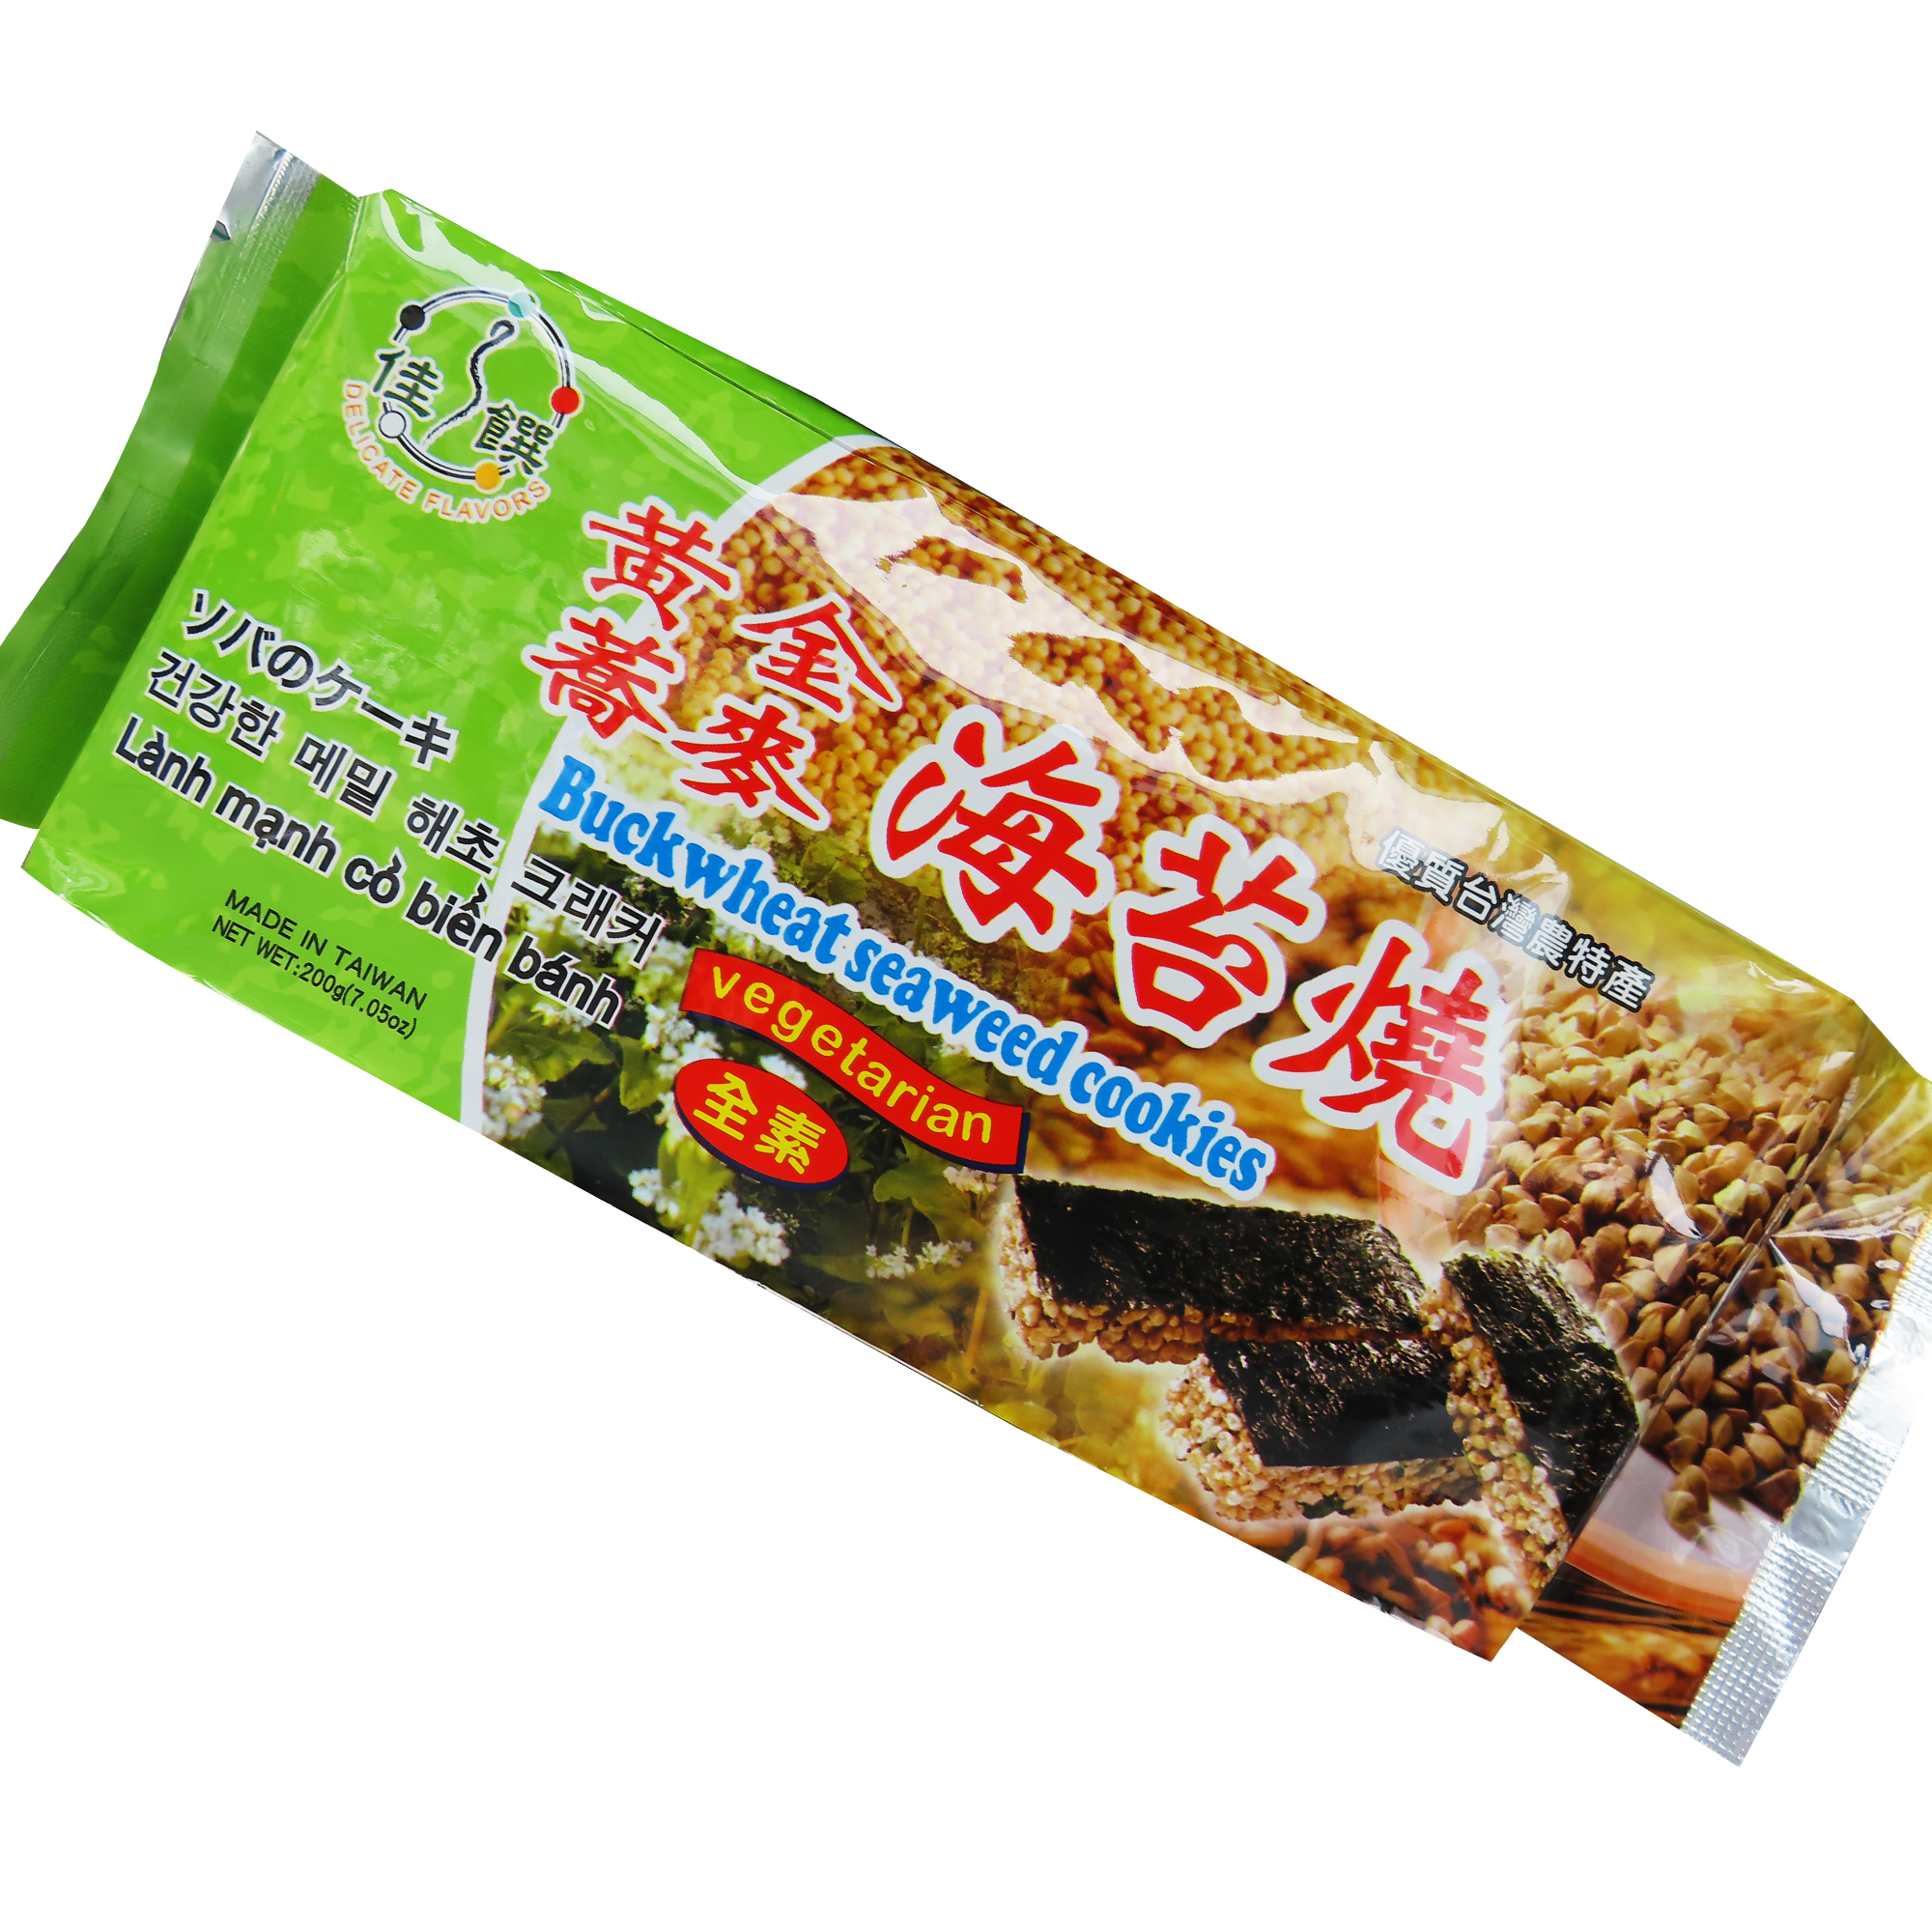 Image Buckwheat Seaweed Cookies 佳馔-黄金荞麦海苔烧 200 grams